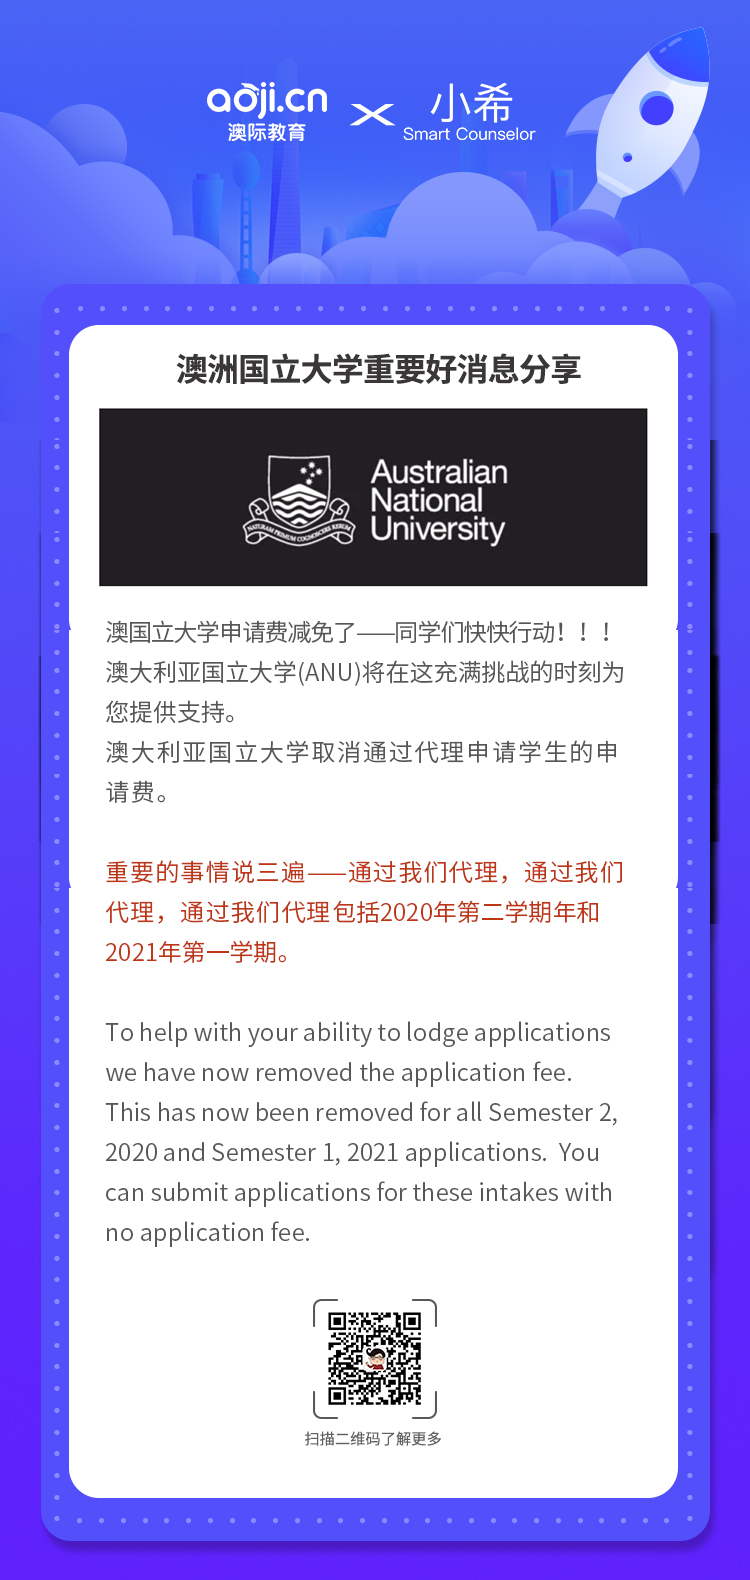 澳洲國立大學申請費減免了，快快行動起來